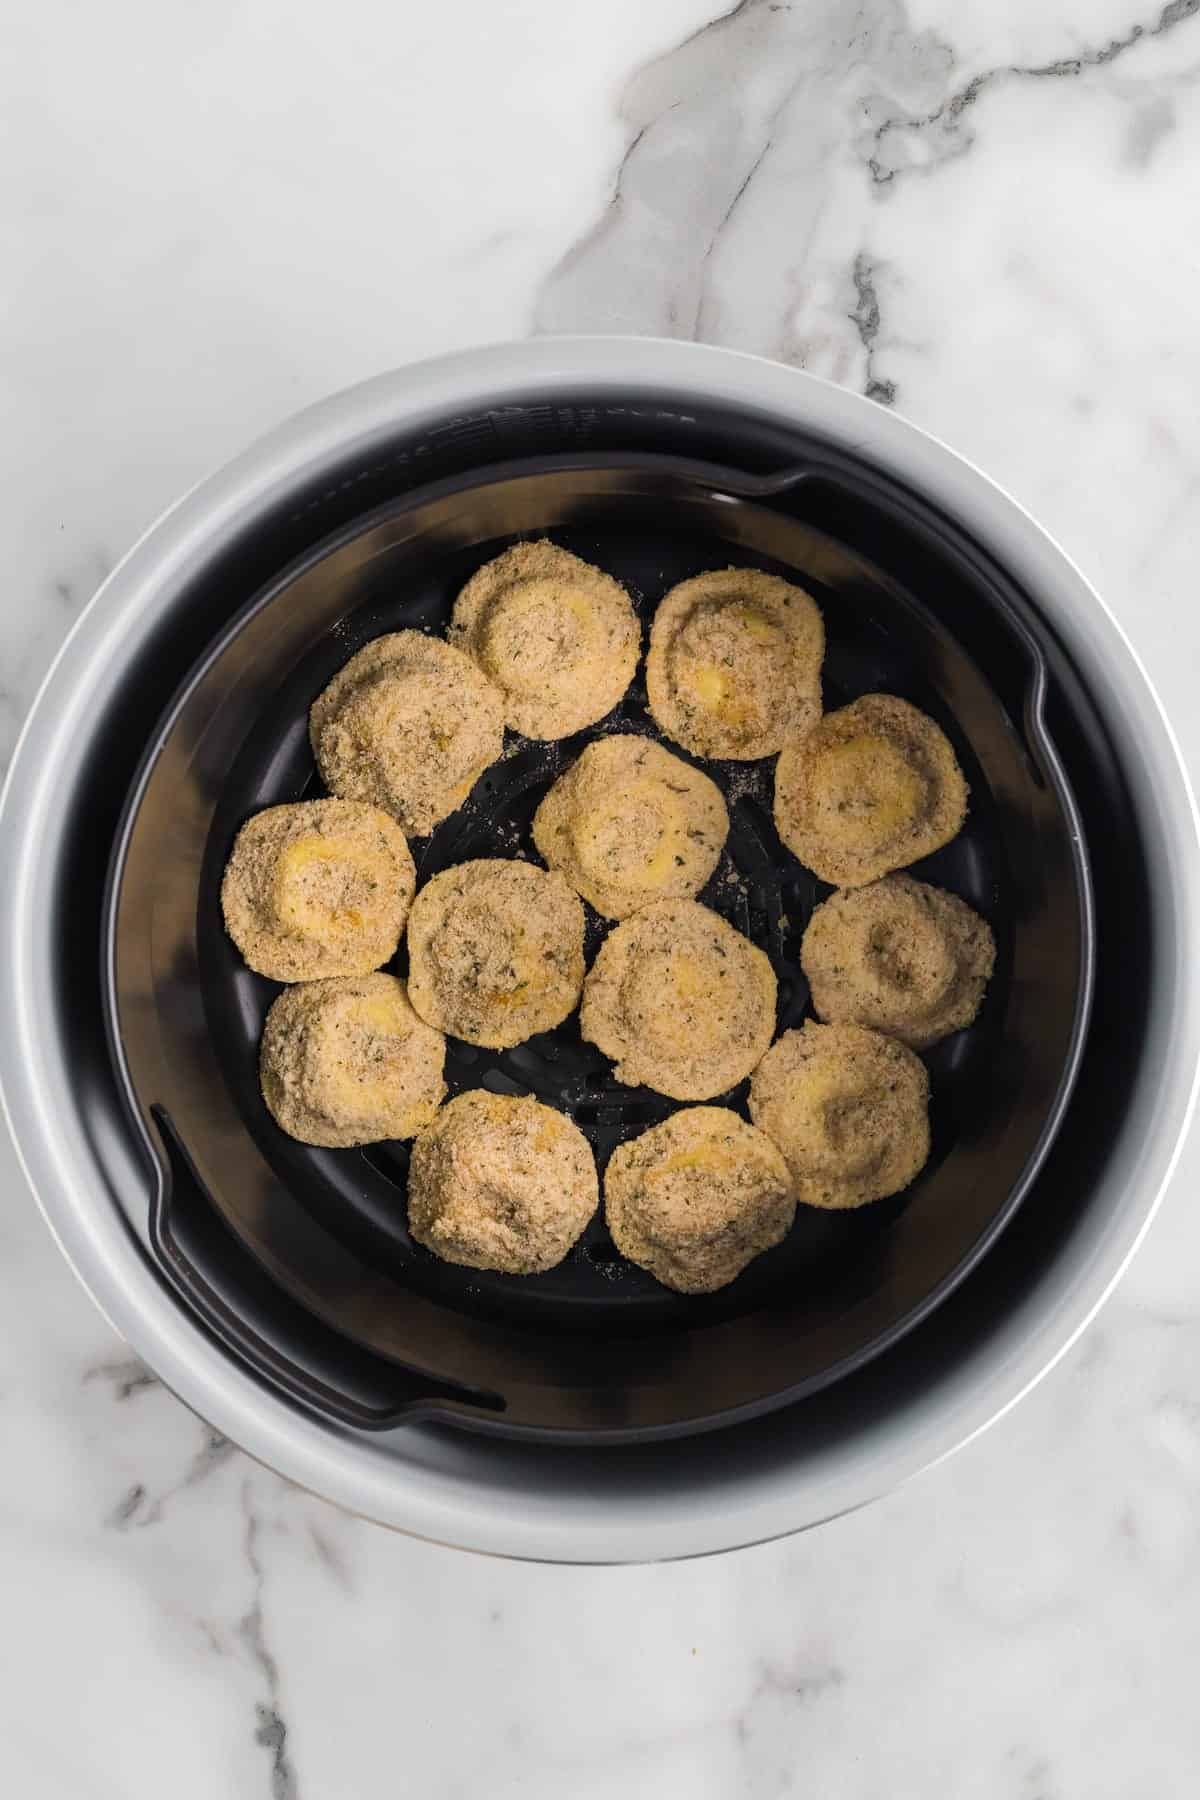 coated ravioli in the air fryer basket.